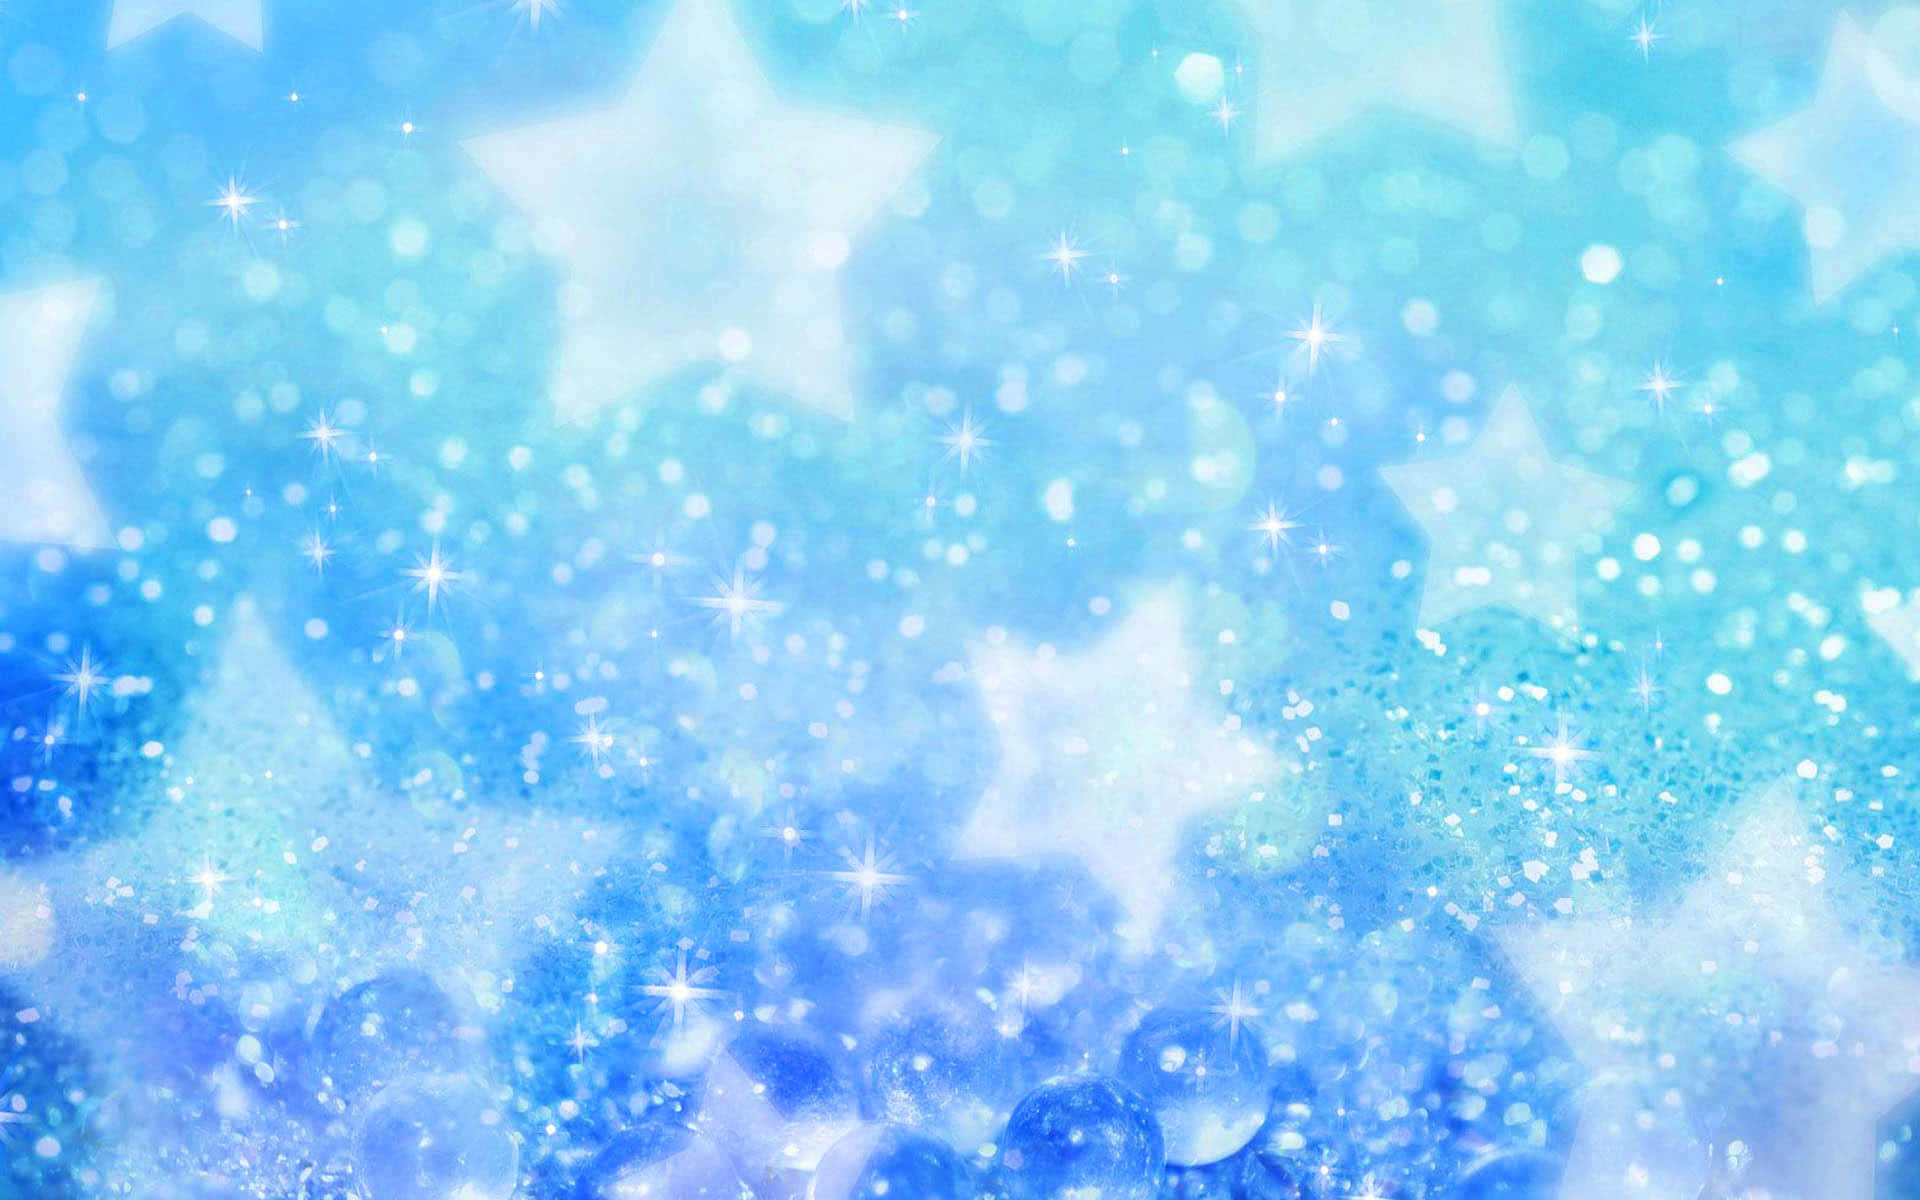 Sparkly Blue Background&Star